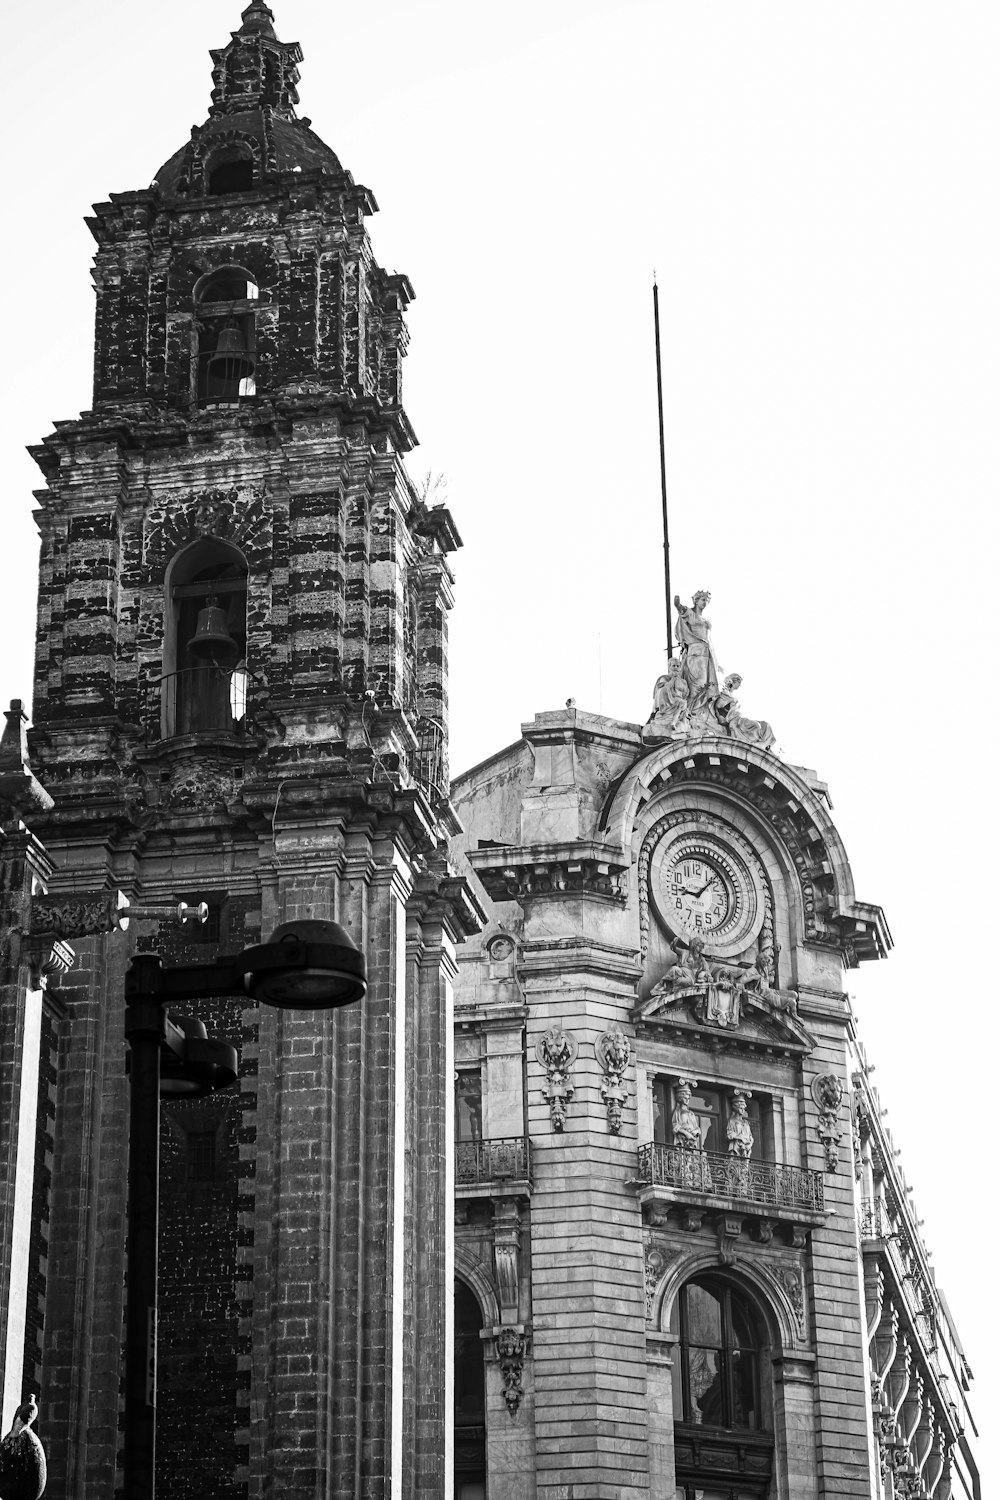 時計塔のある建物の白黒写真